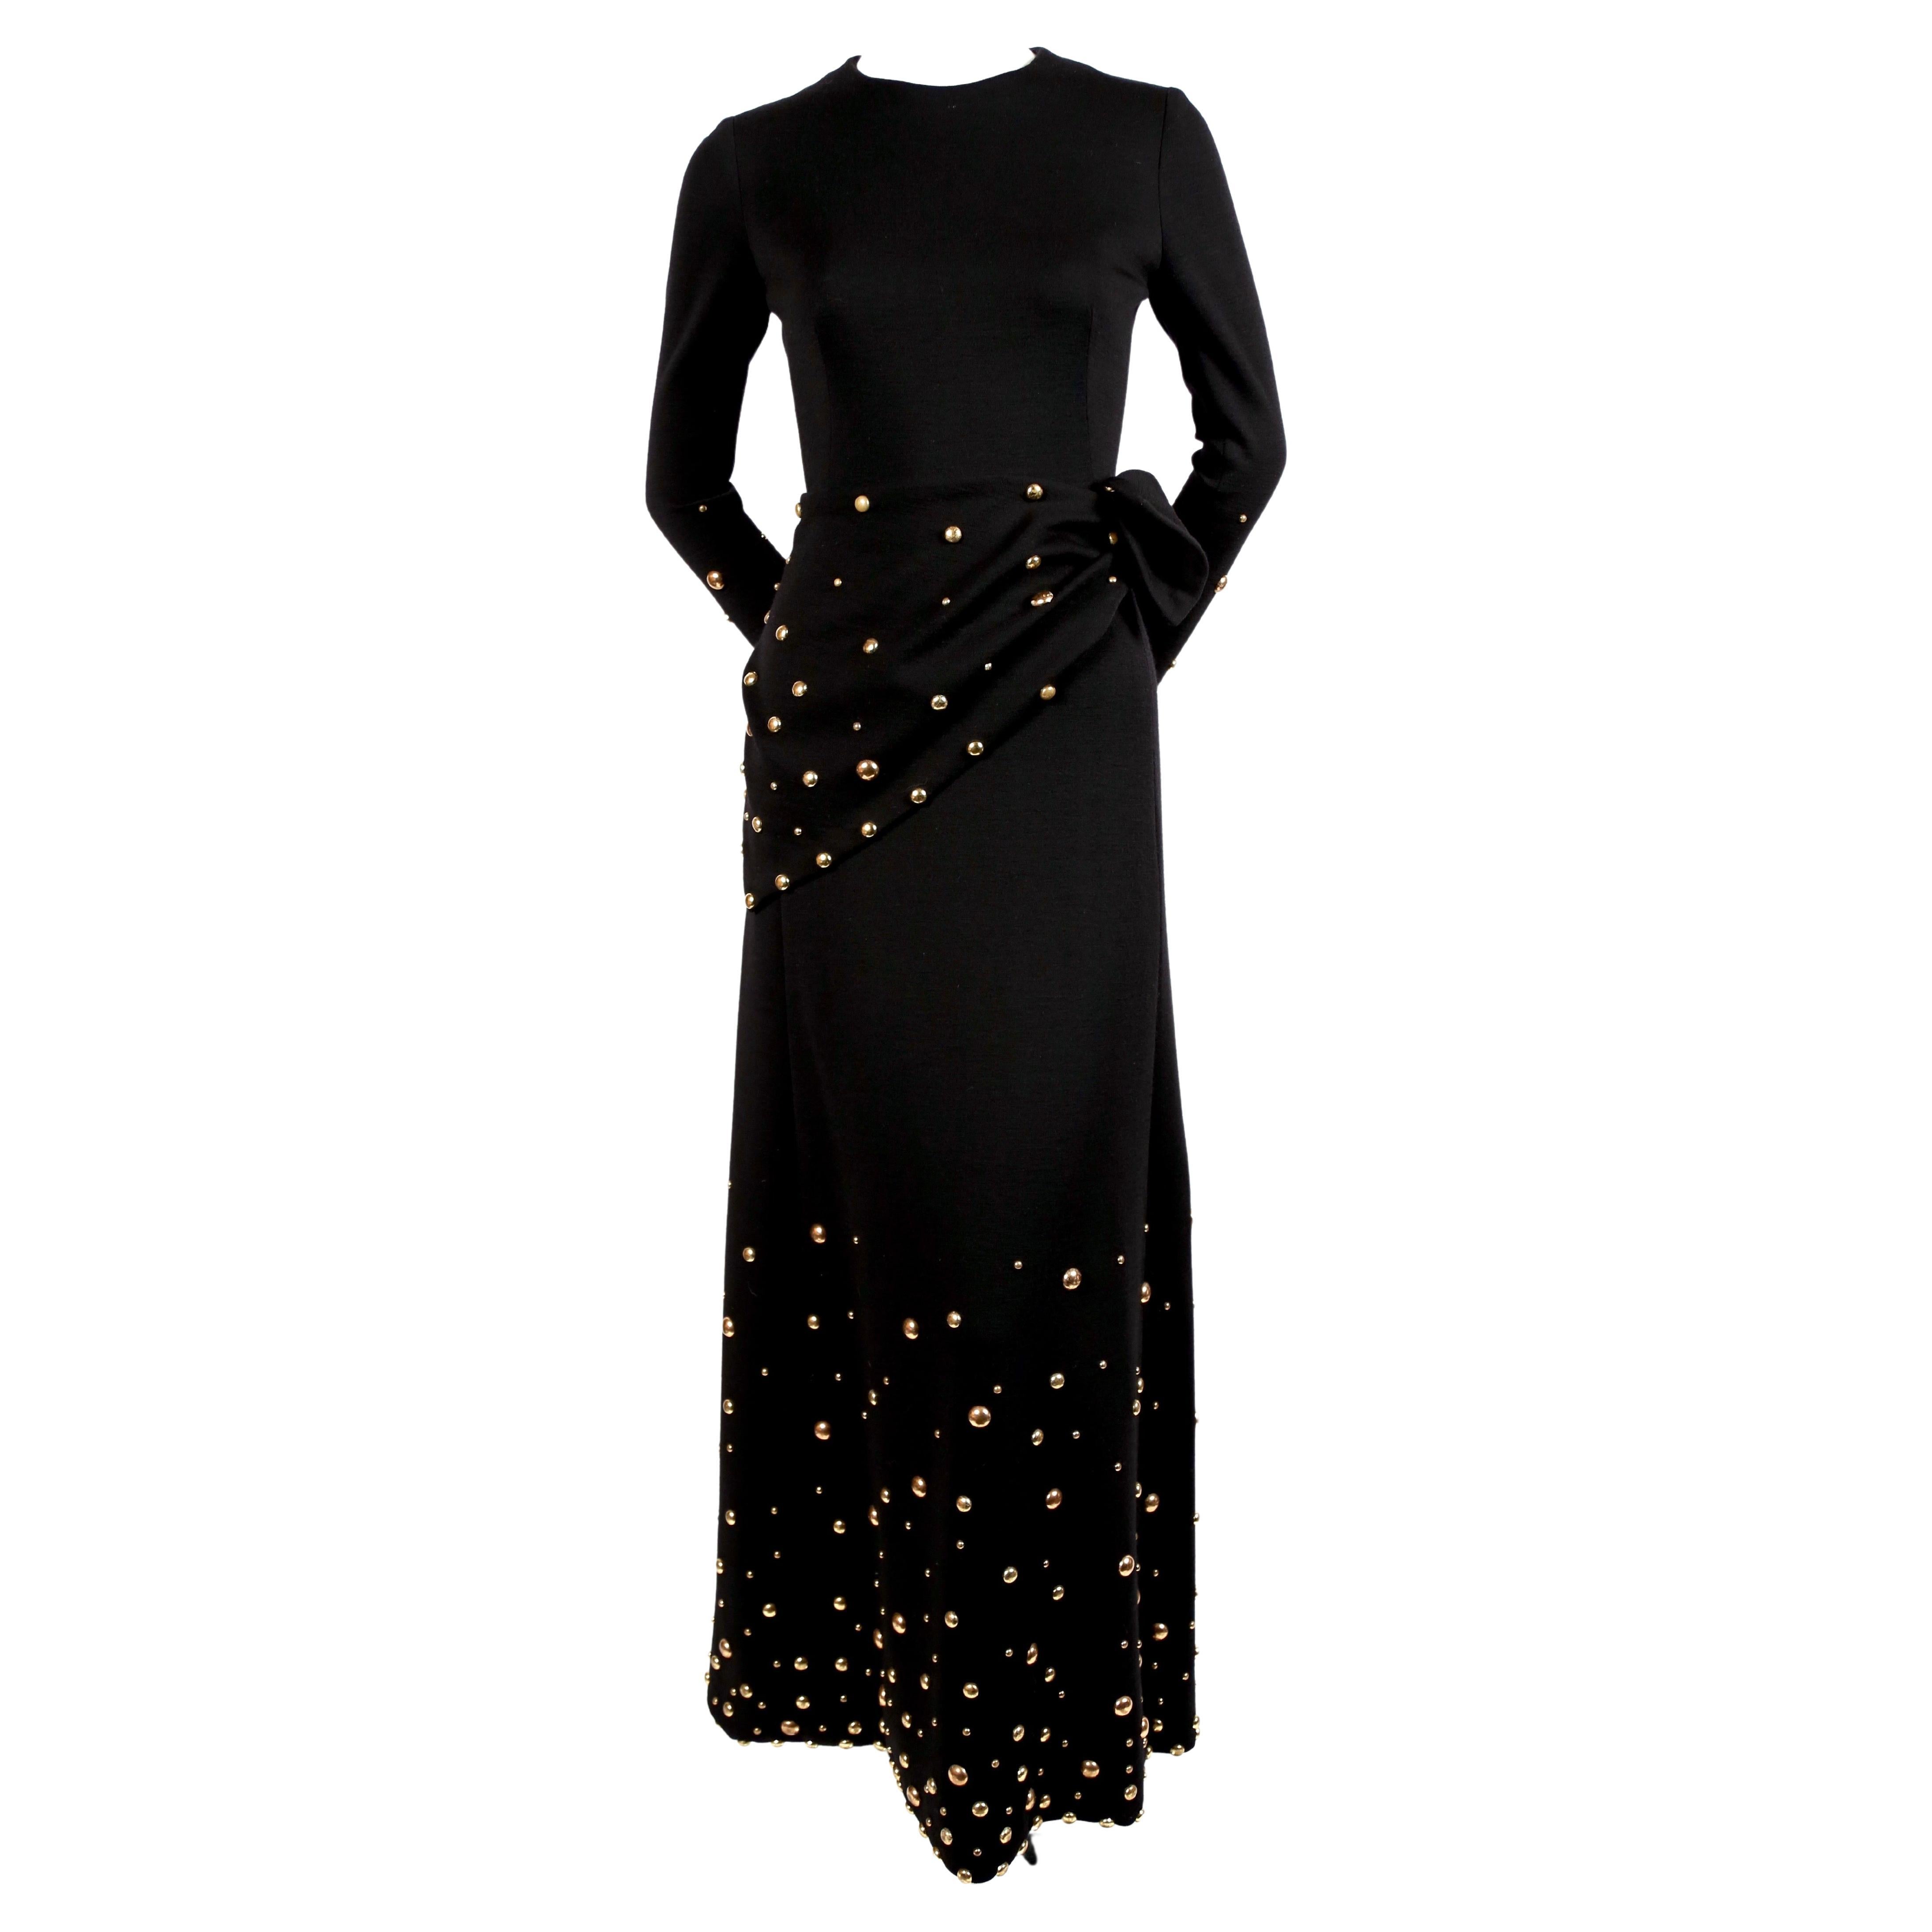 Exceptionnelle robe longue en jersey de laine noir de jais avec clous dorés et écharpe assortie, créée par Givenchy dans les années 1970. La robe convient à une taille 2 ou 4. Mesures approximatives : 15